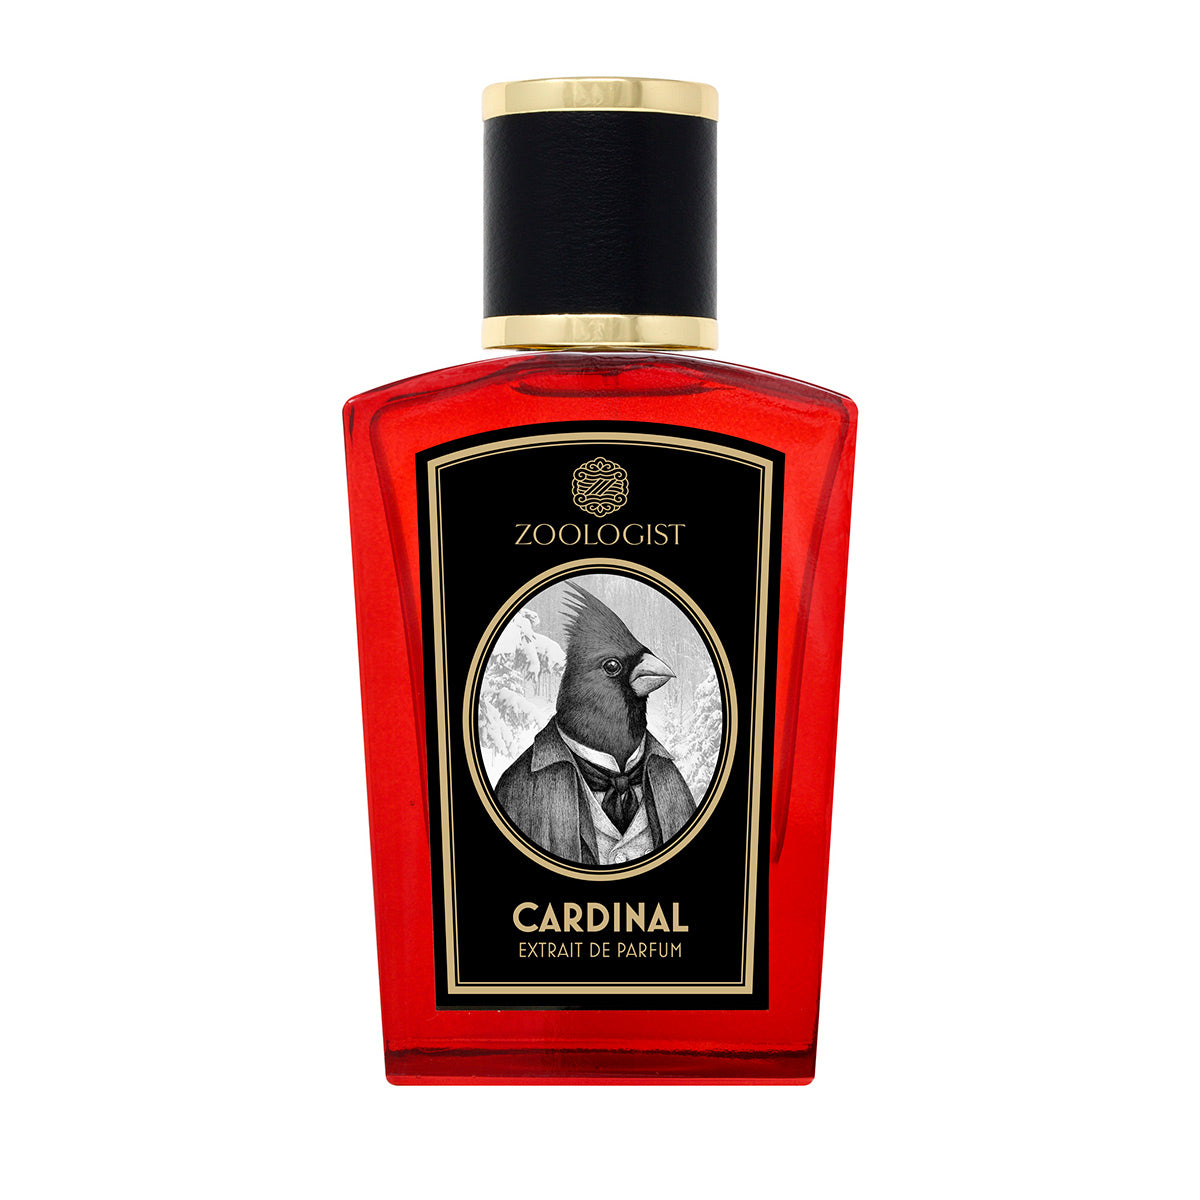 Cardinal (Edición Especial) - Zoologist - EP 60ml